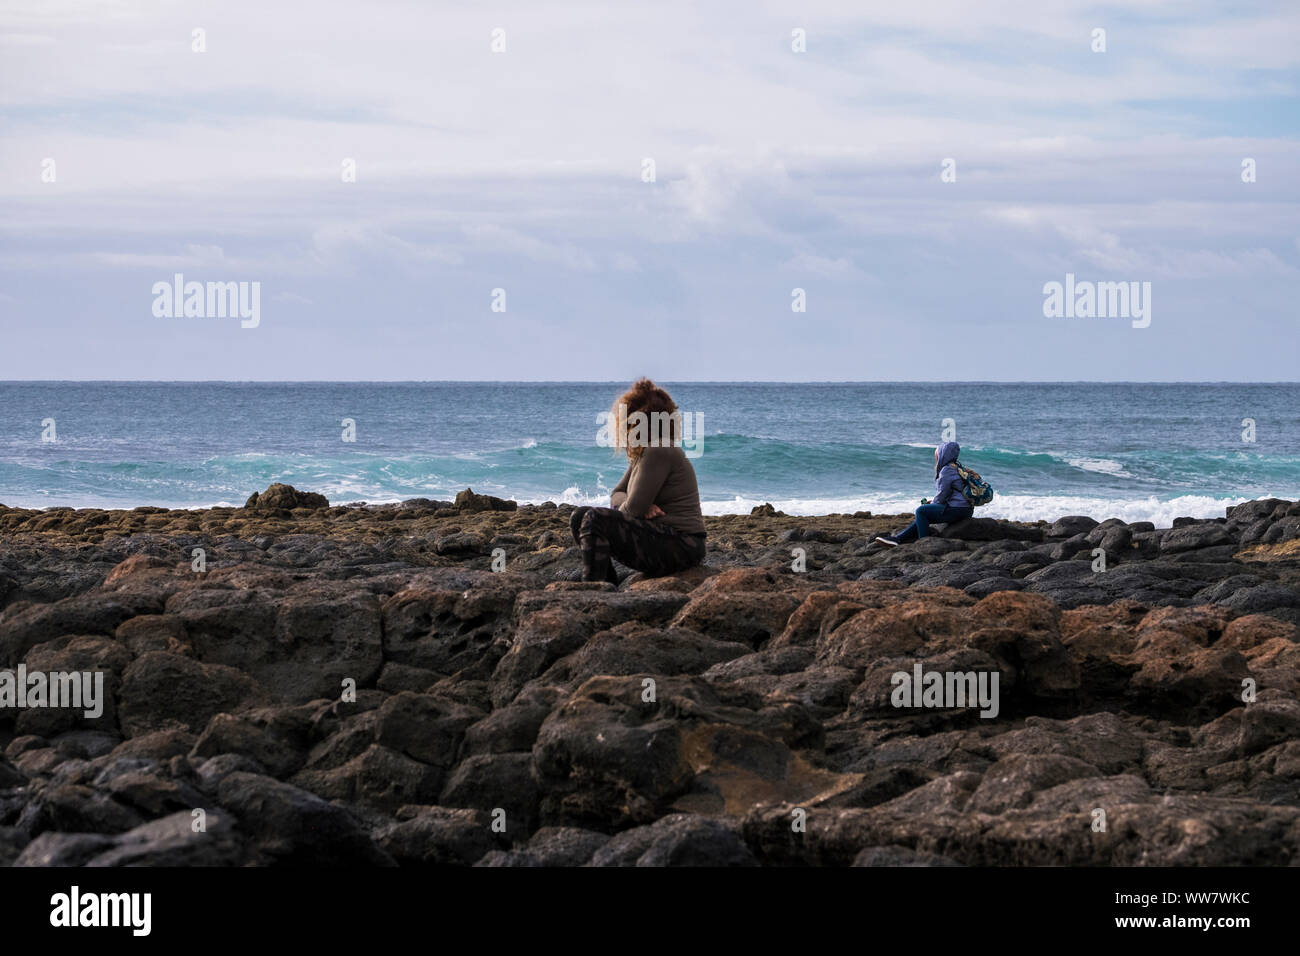 Una donna e un uomo sedersi guardando la potenza dell'oceano durante una stagione fredda come in inverno Foto Stock